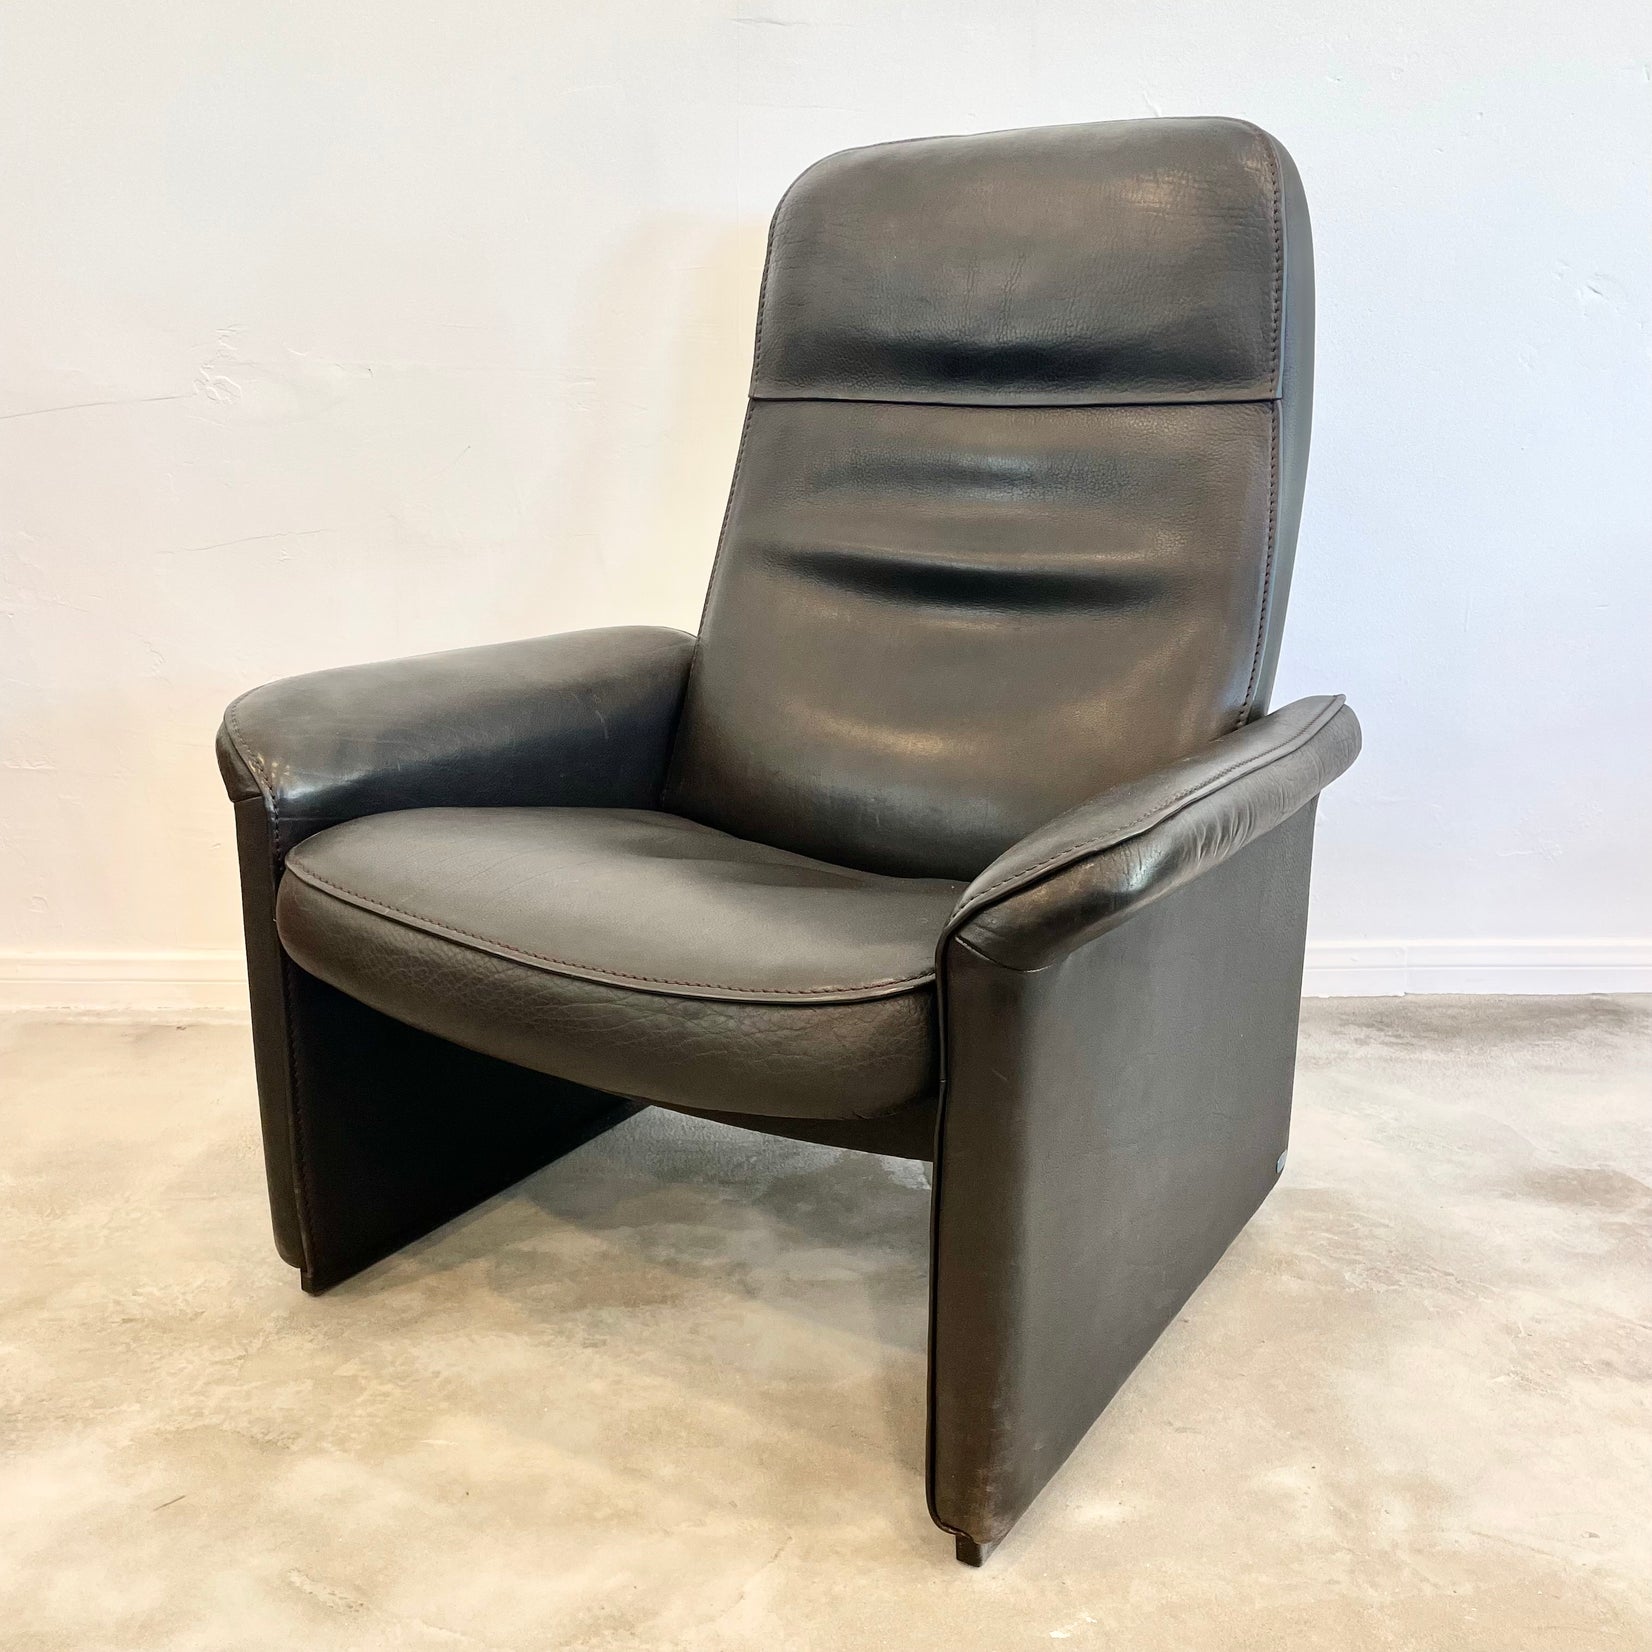 De Sede DS-50 Black Leather Recliner Chair, 1970s Switzerland